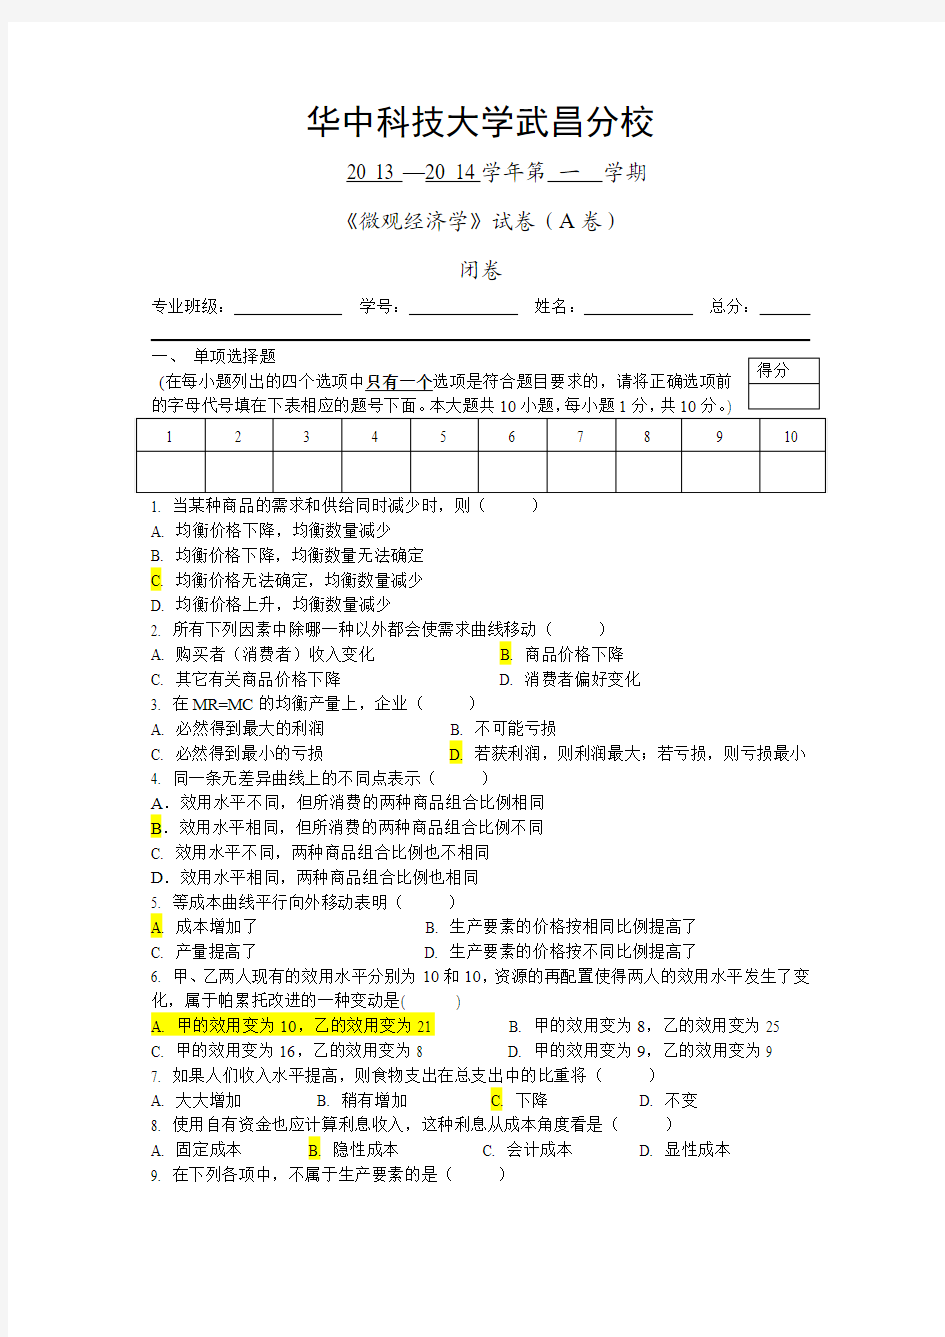 华中科技大学2013-2014微观经济学A卷试题 (1)